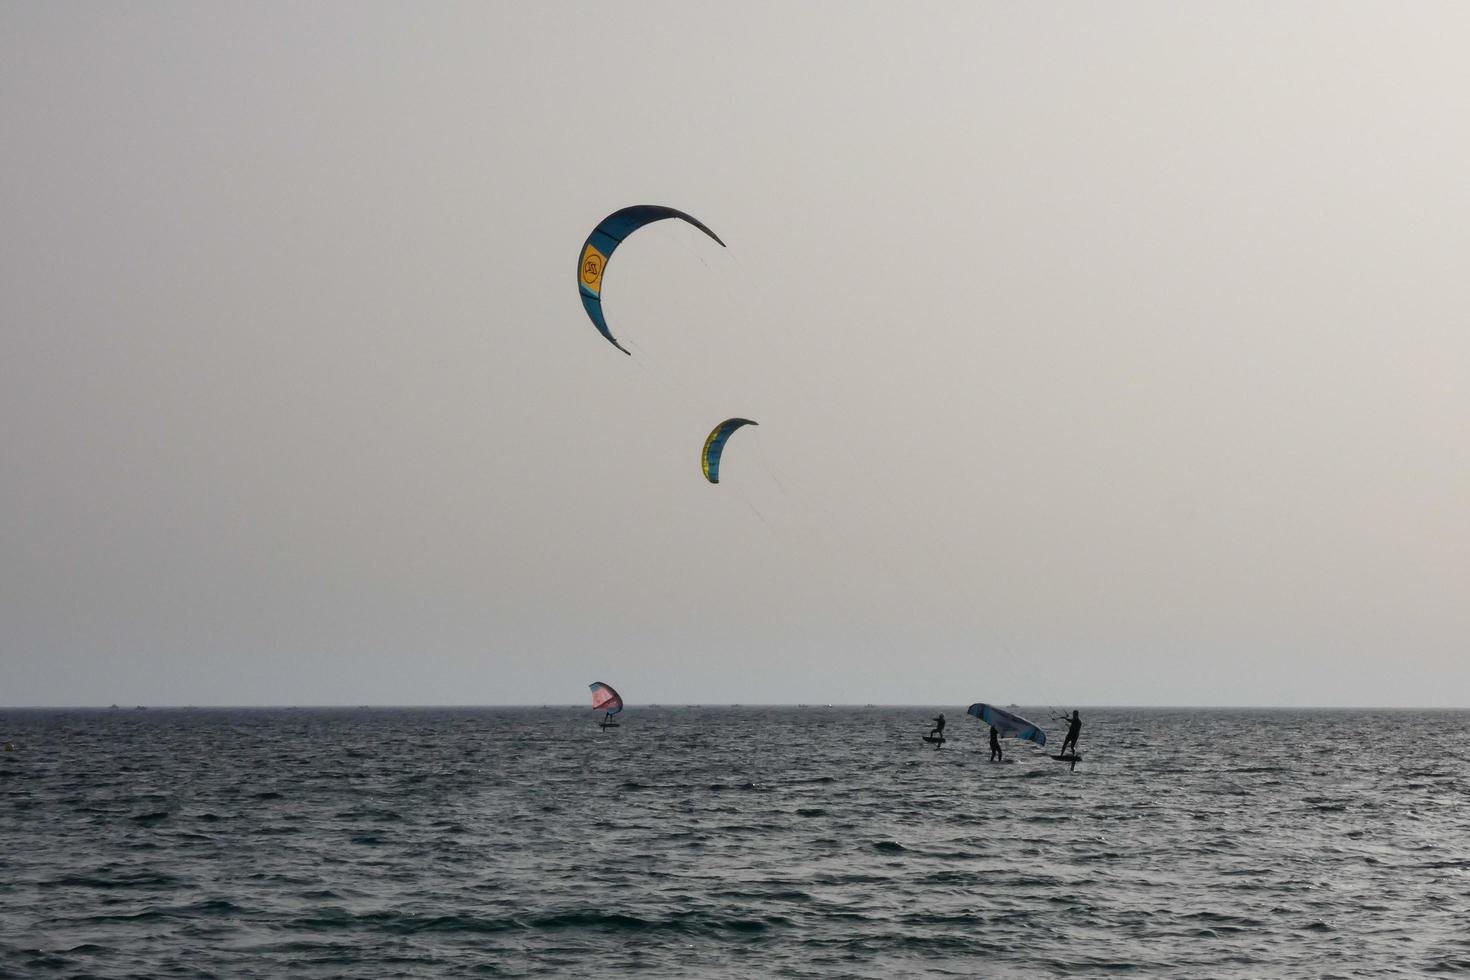 vindsurfing, kitesurfing, vatten och vind sporter driven förbi segel eller drakar foto